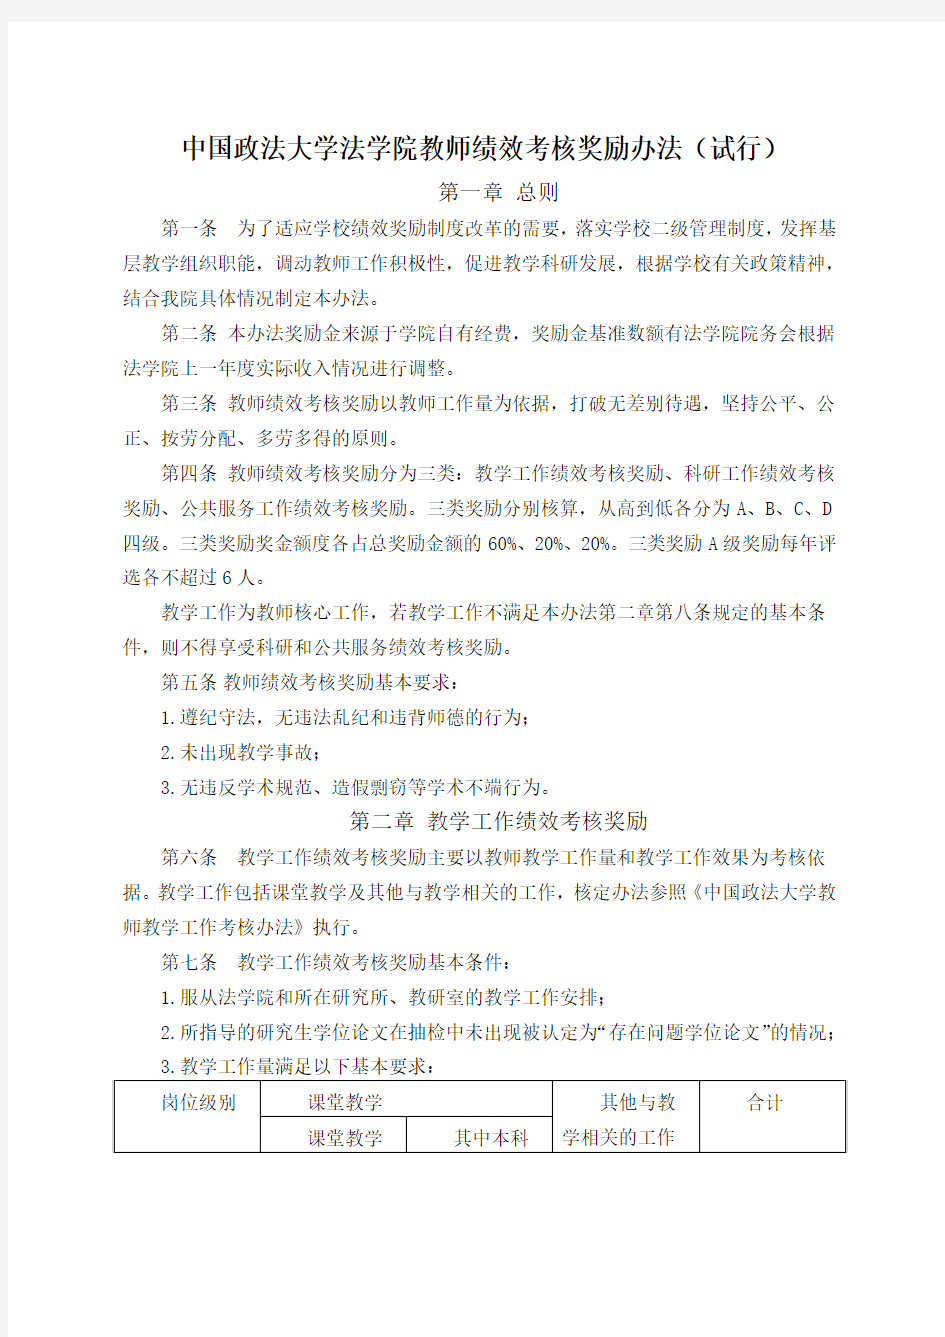 中国政法大学法学院教师绩效考核奖励办法试行